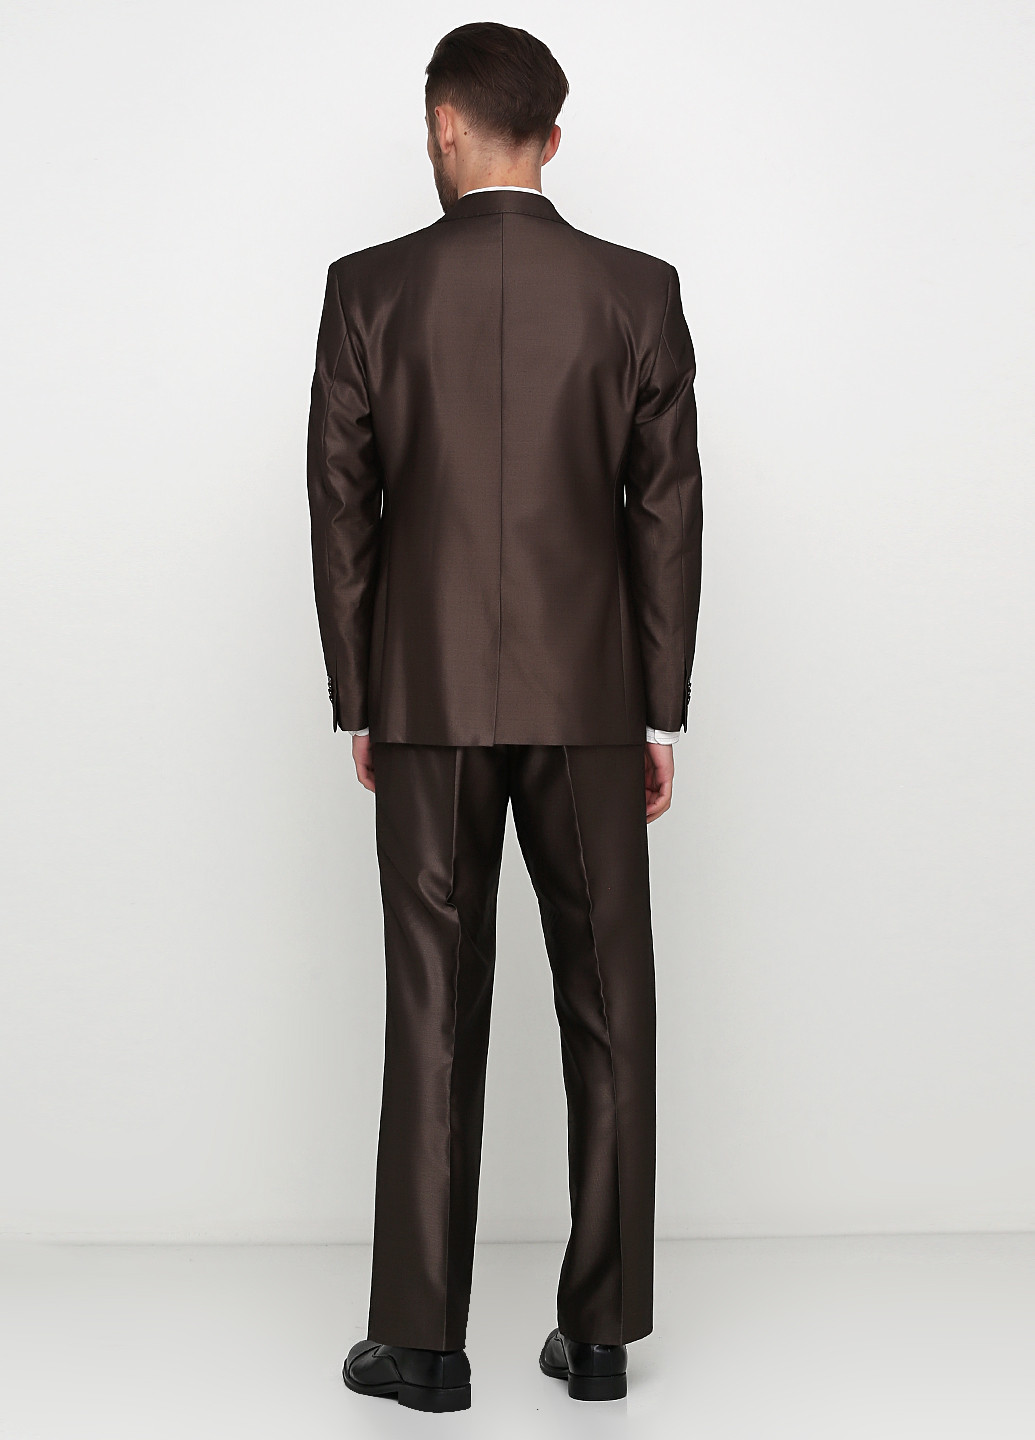 Коричневый демисезонный костюм (пиджак, брюки) брючный, с длинным рукавом Galant